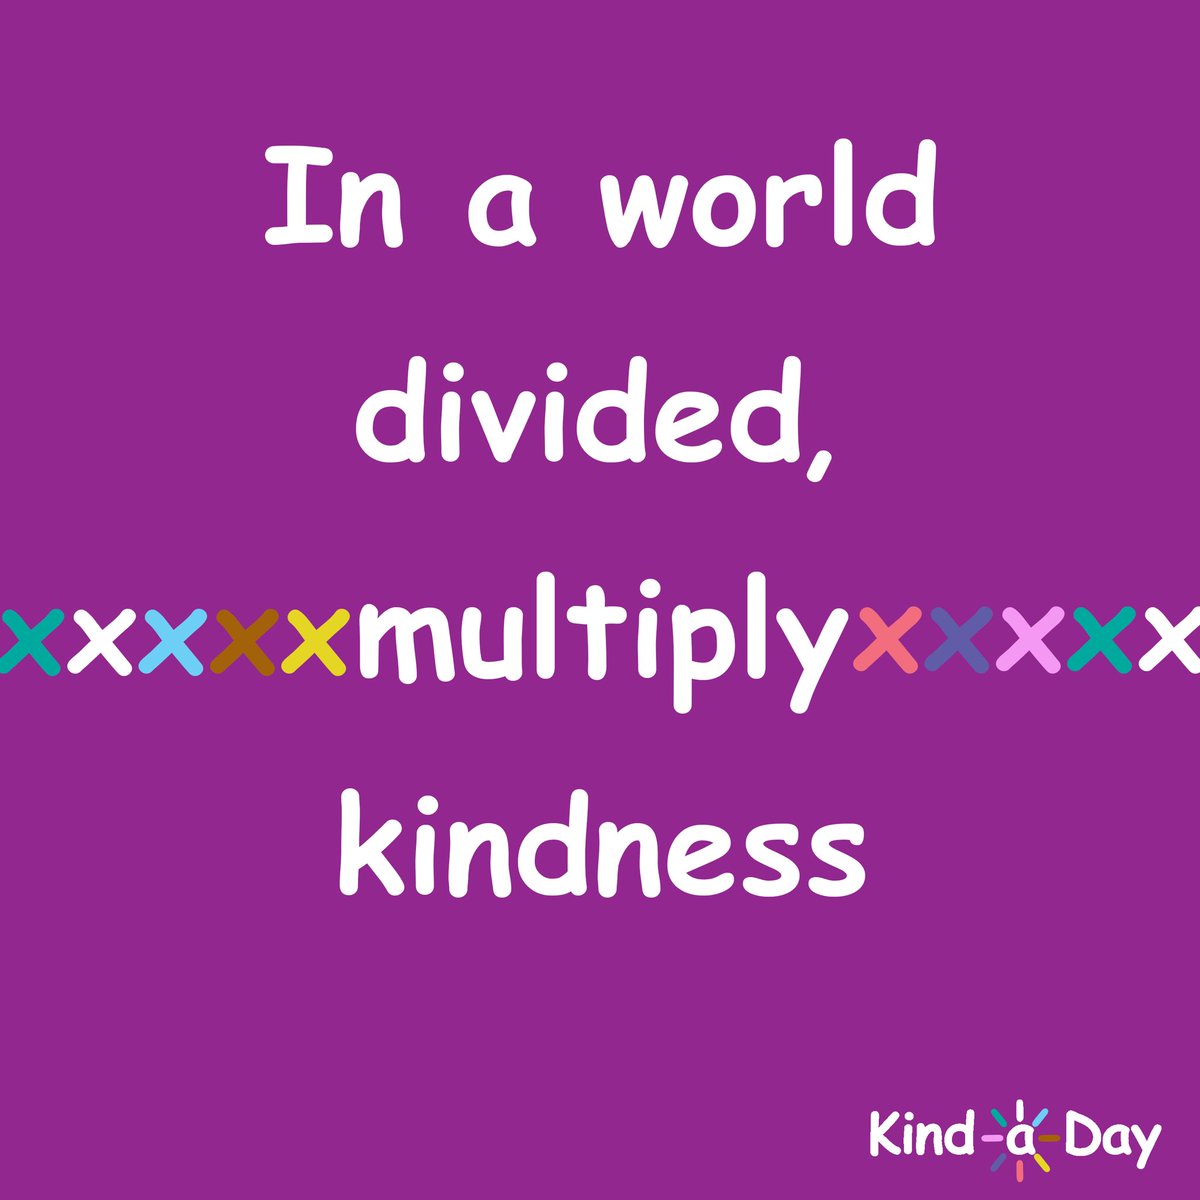 In a world divided, multiply kindness ☮️
 
#kind #BeKind #kindness #love #peace #KindLife #ActsOfKindness #SpreadKindness #KindnessMatters #ChooseKindness #KindnessWins #KindaDay #KindnessAlways #KindnessEveryday #Kindness365 #KindnessChallenge #RandomActsOfKindness